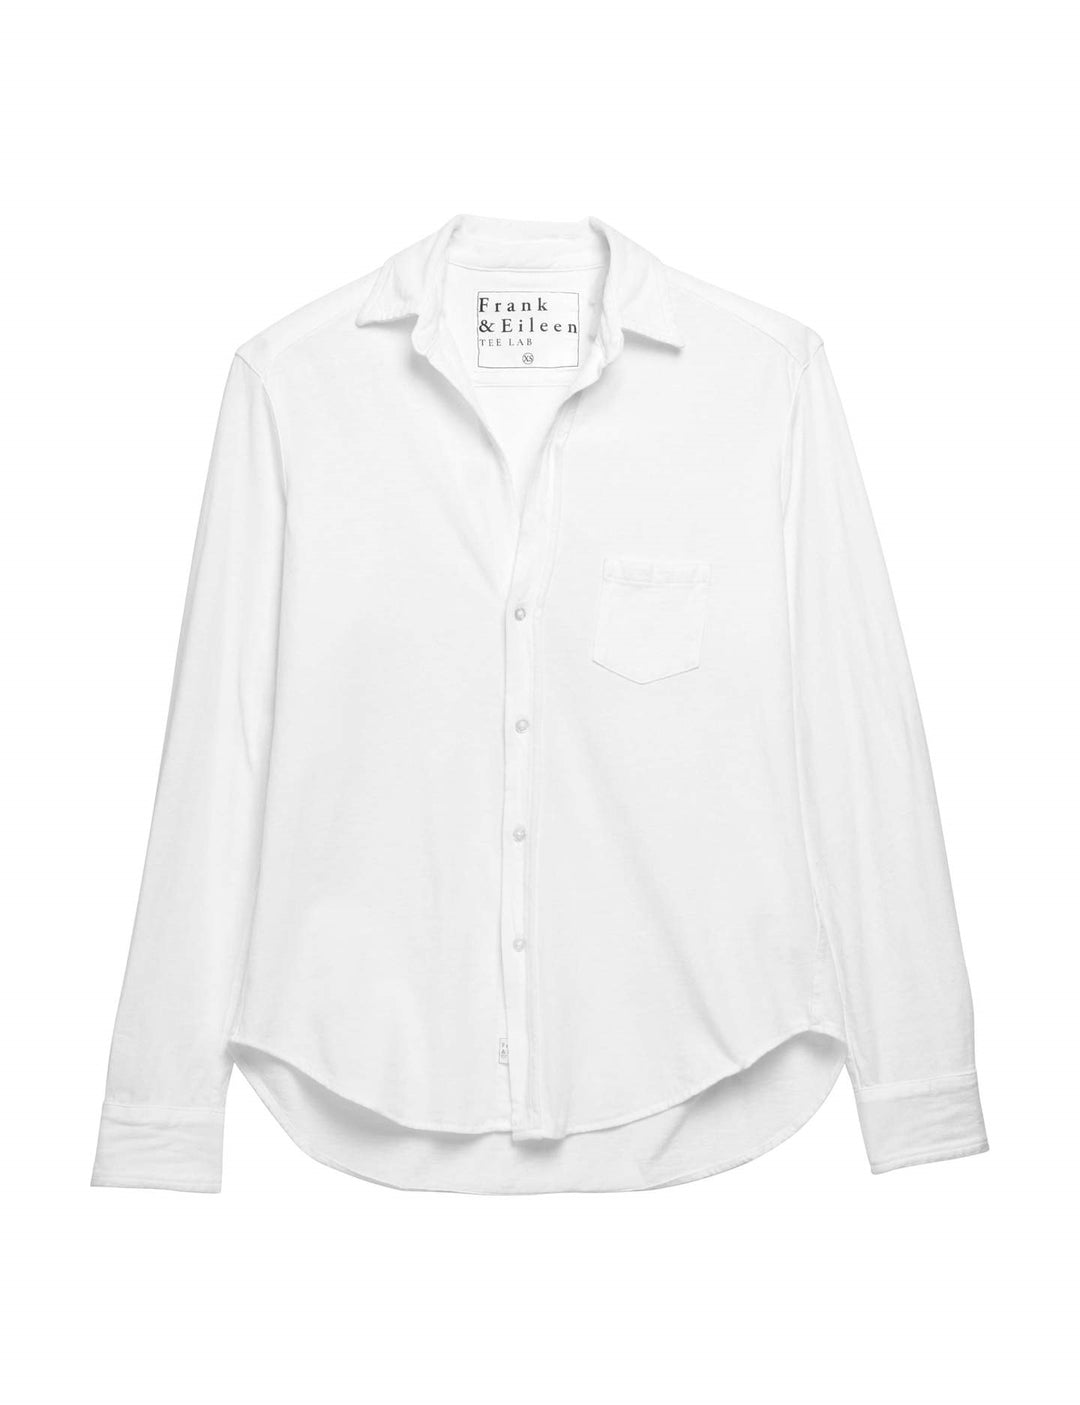 Frank & Eileen - Eileen Knit Button Up in White